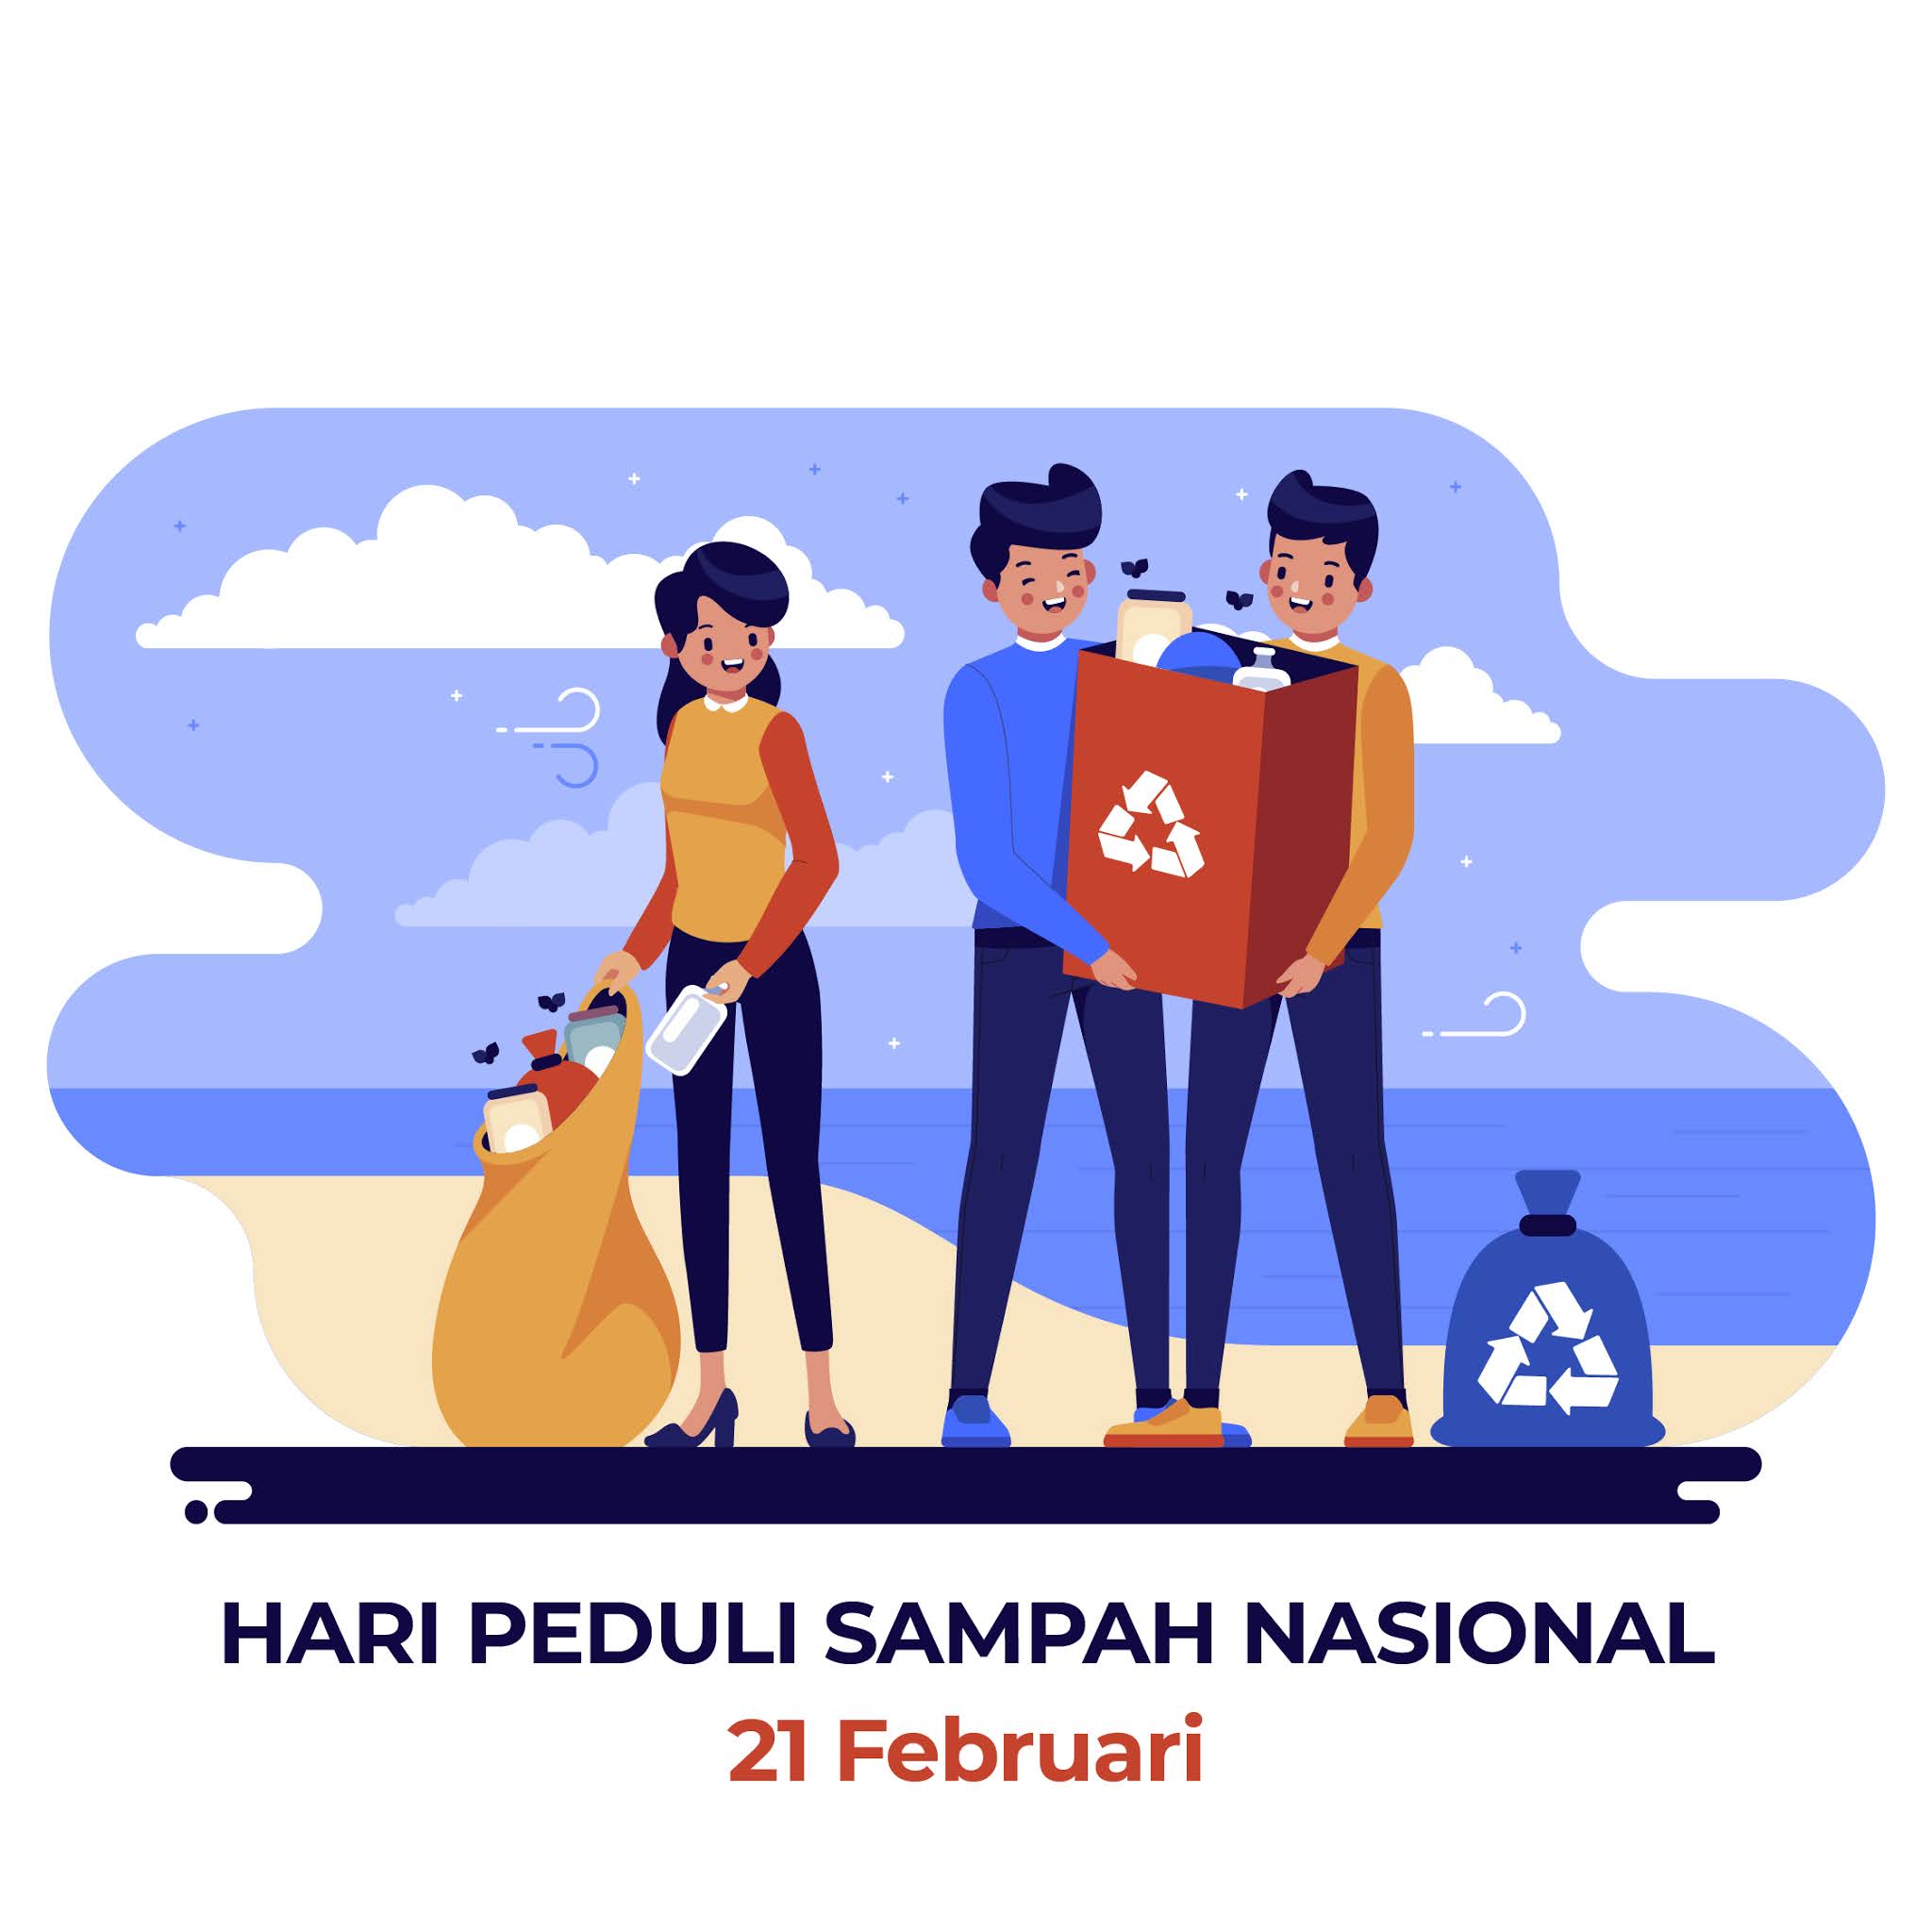 Kumpulan Gambar Desain Template Hari Peduli Sampah Nasional 2021